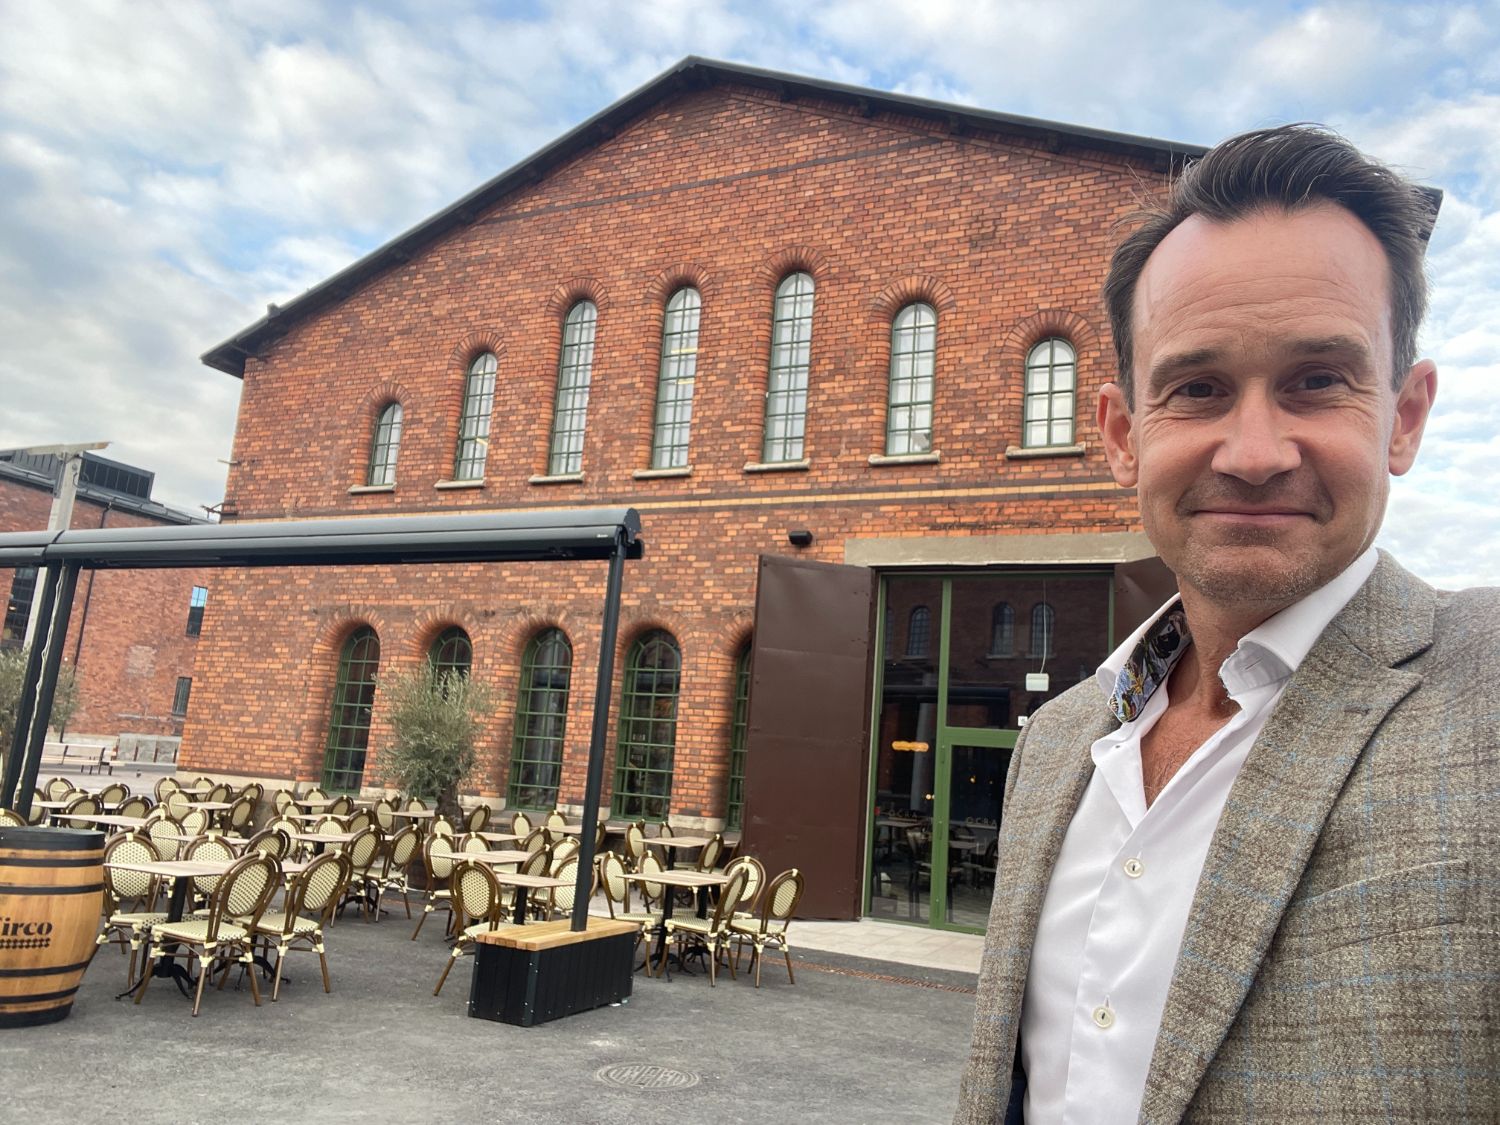 Nya restauranger i Stockholm 2022